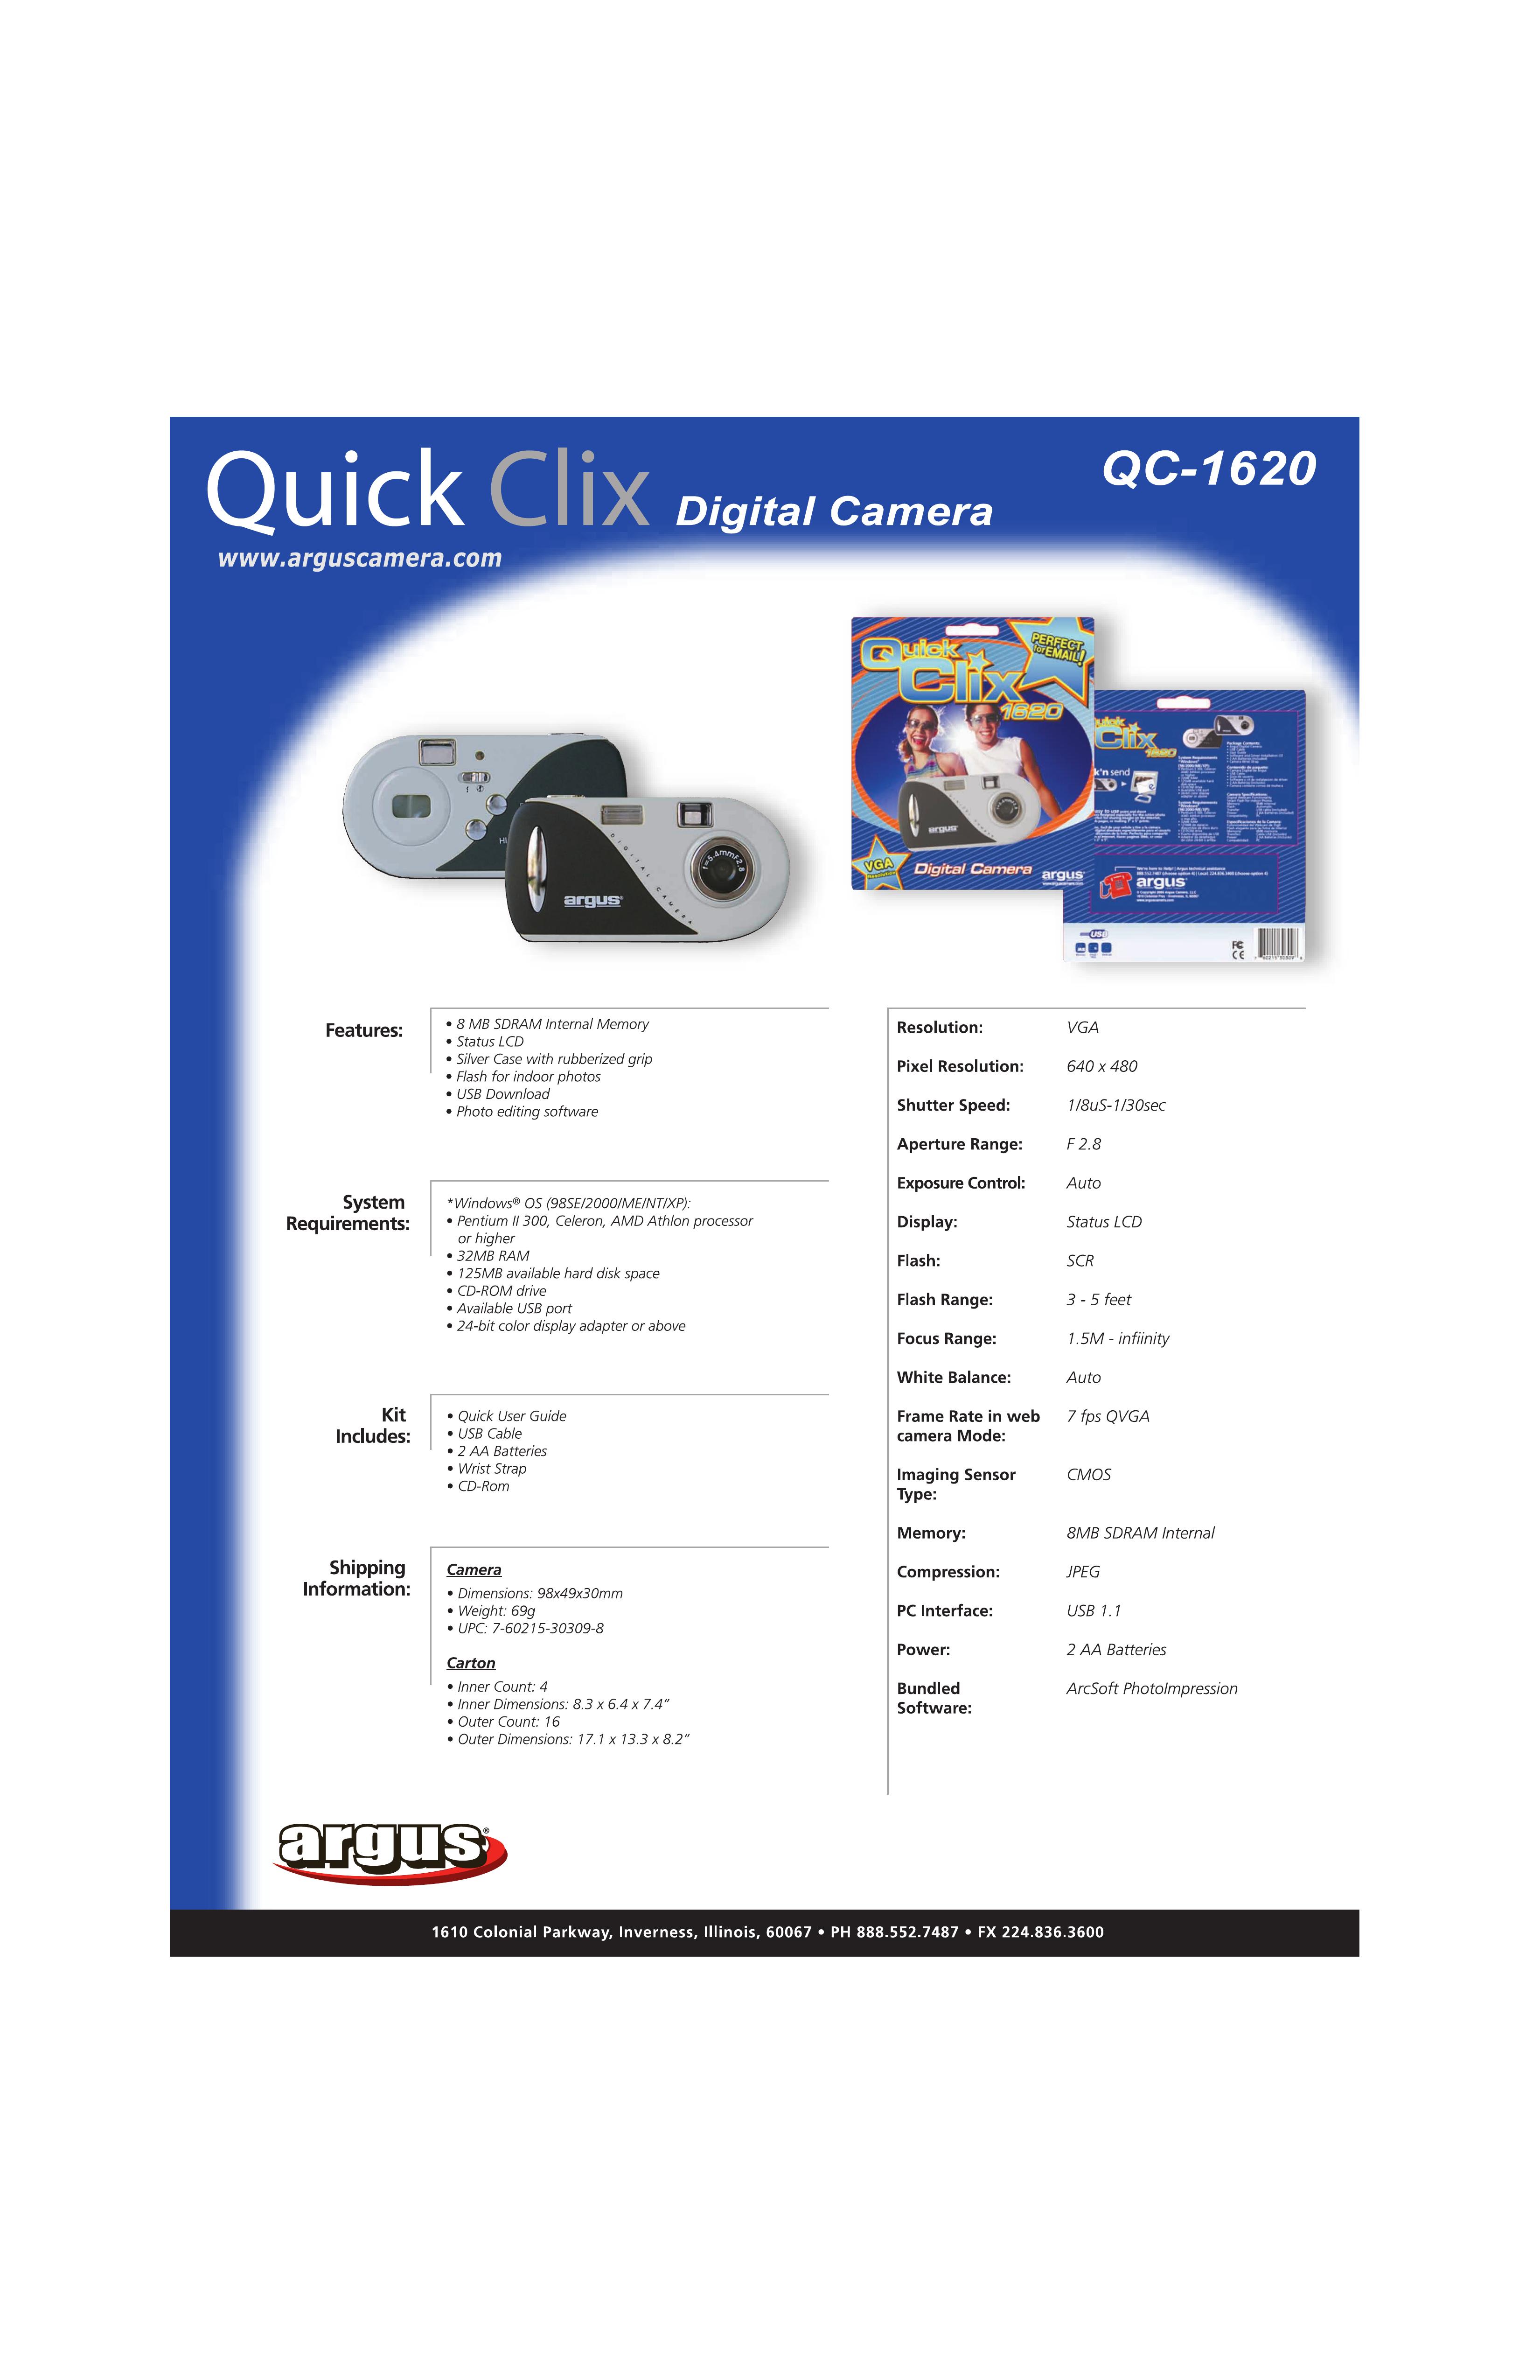 Argus Camera QC-1620 Digital Camera User Manual